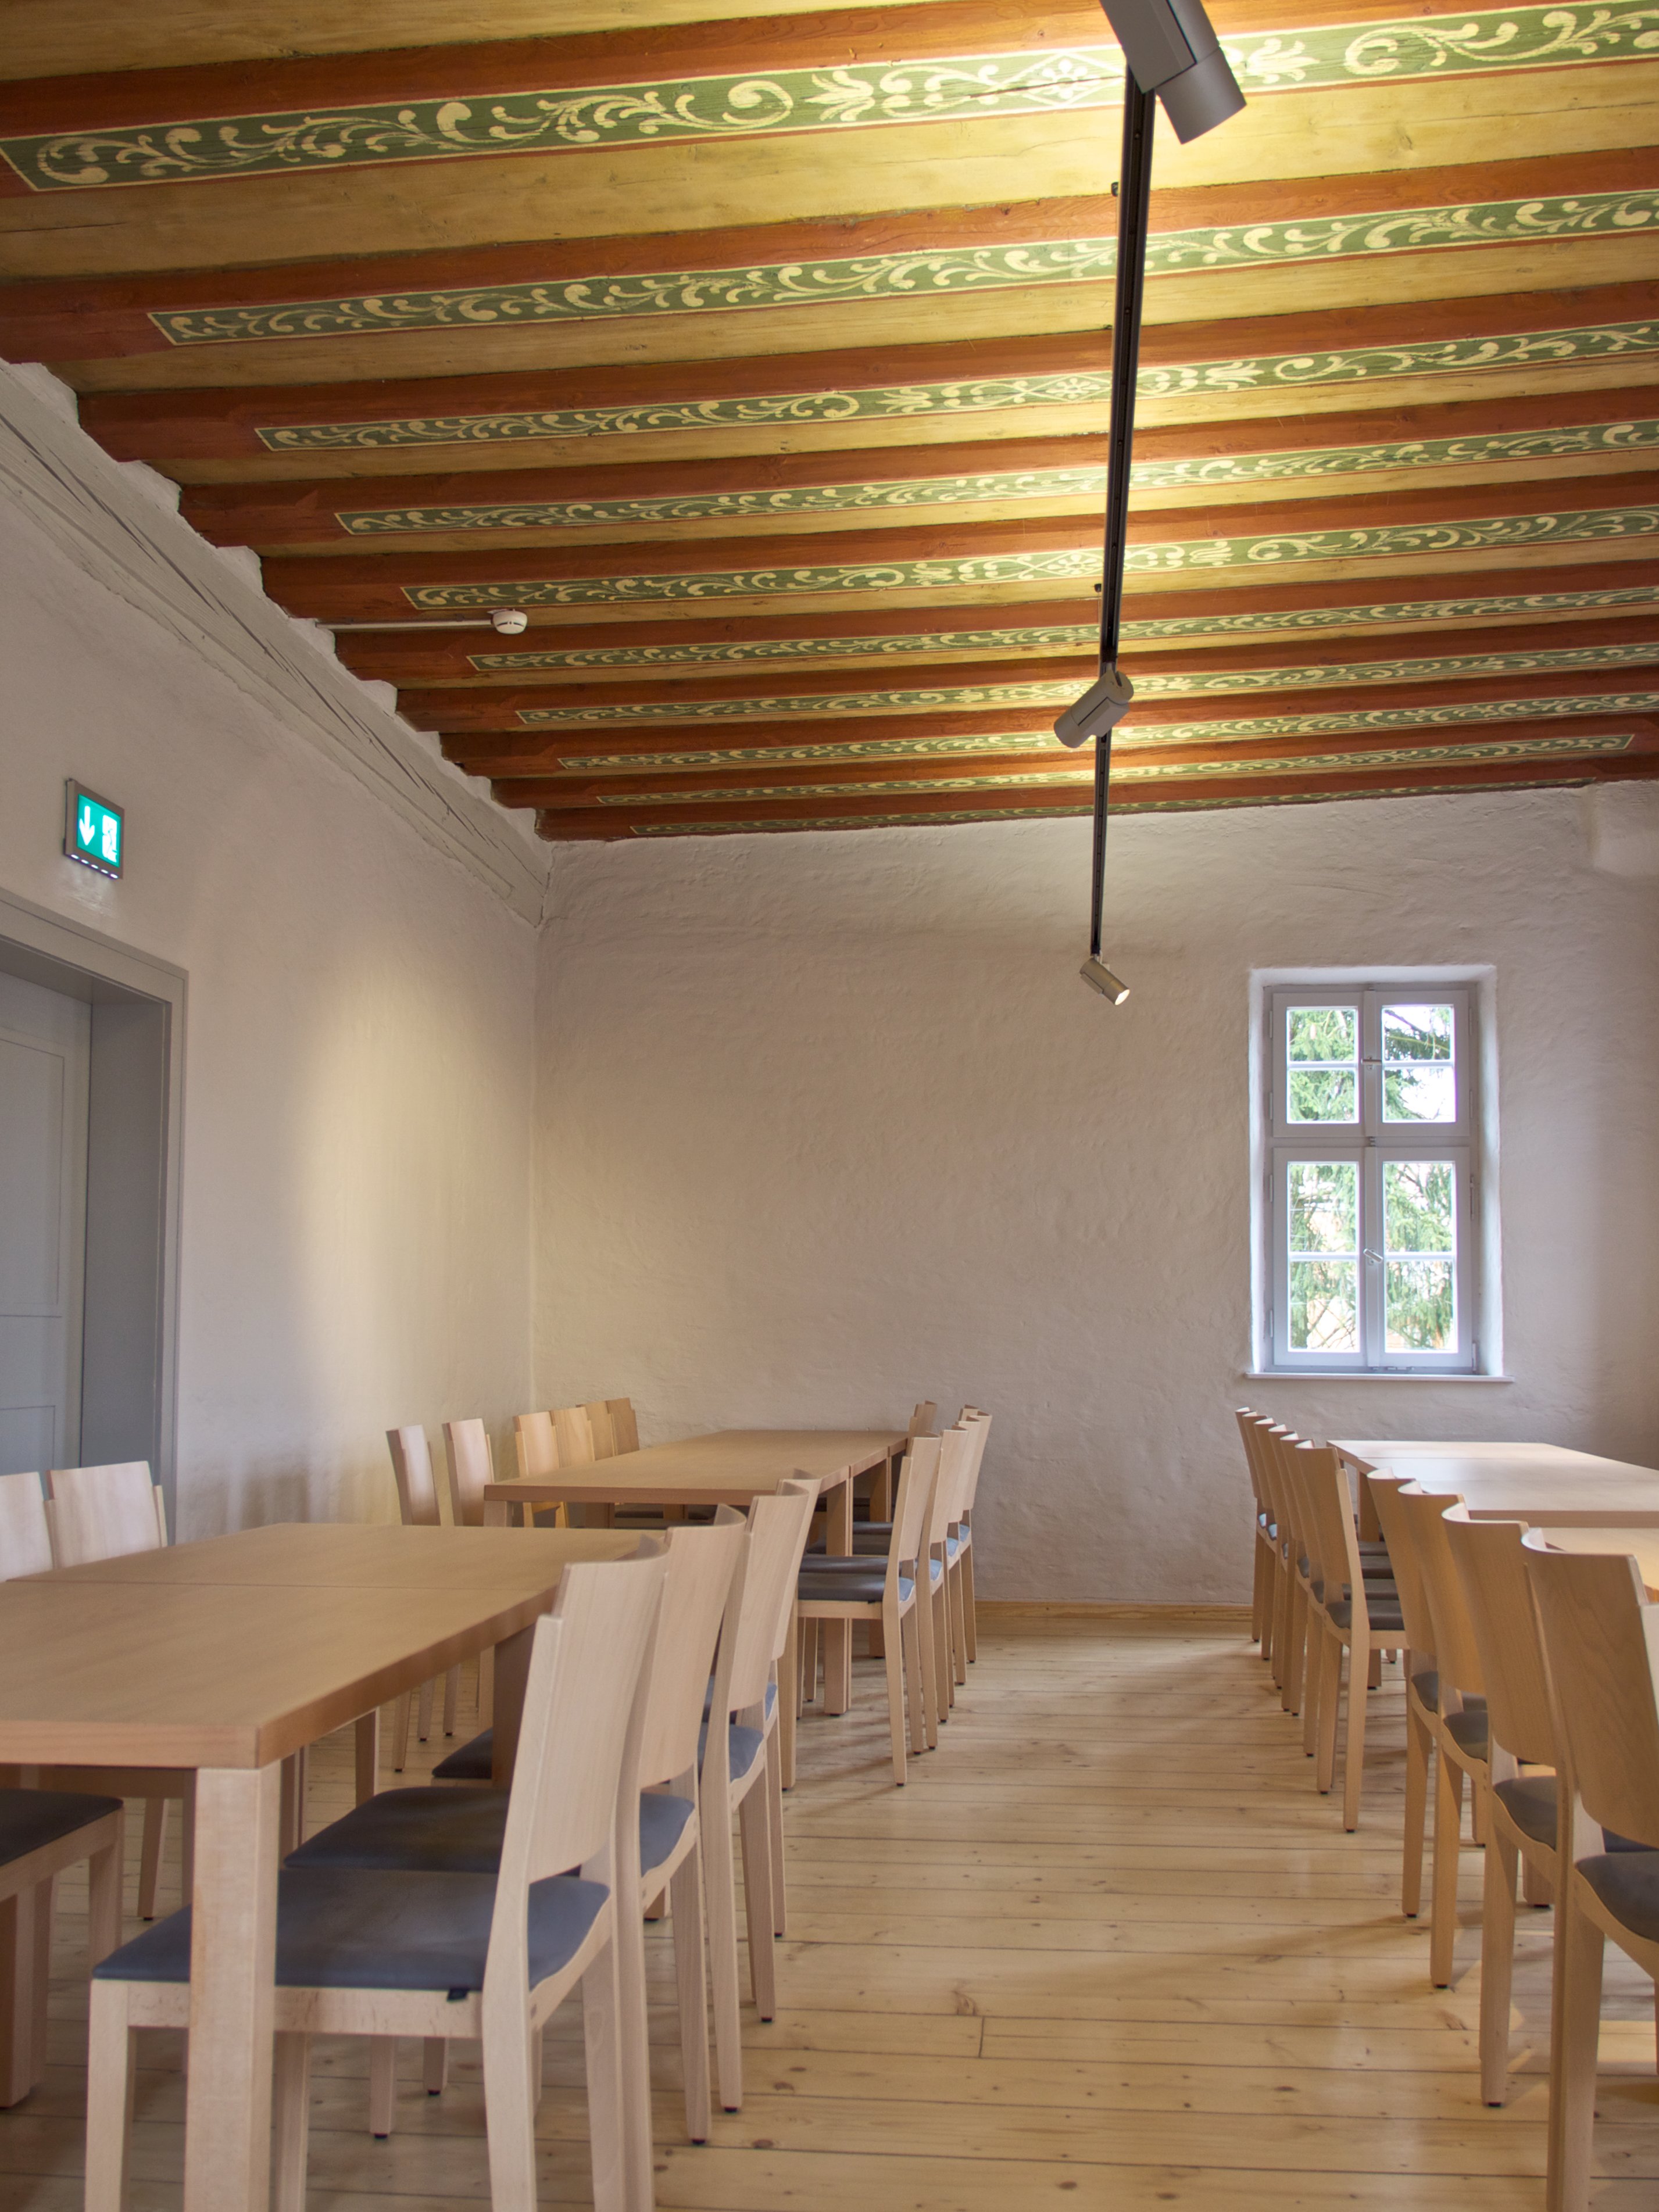 Αίθουσα στο Καστρο Τσαιντλερ με ζωγραφισμένη ξύλινη οροφή